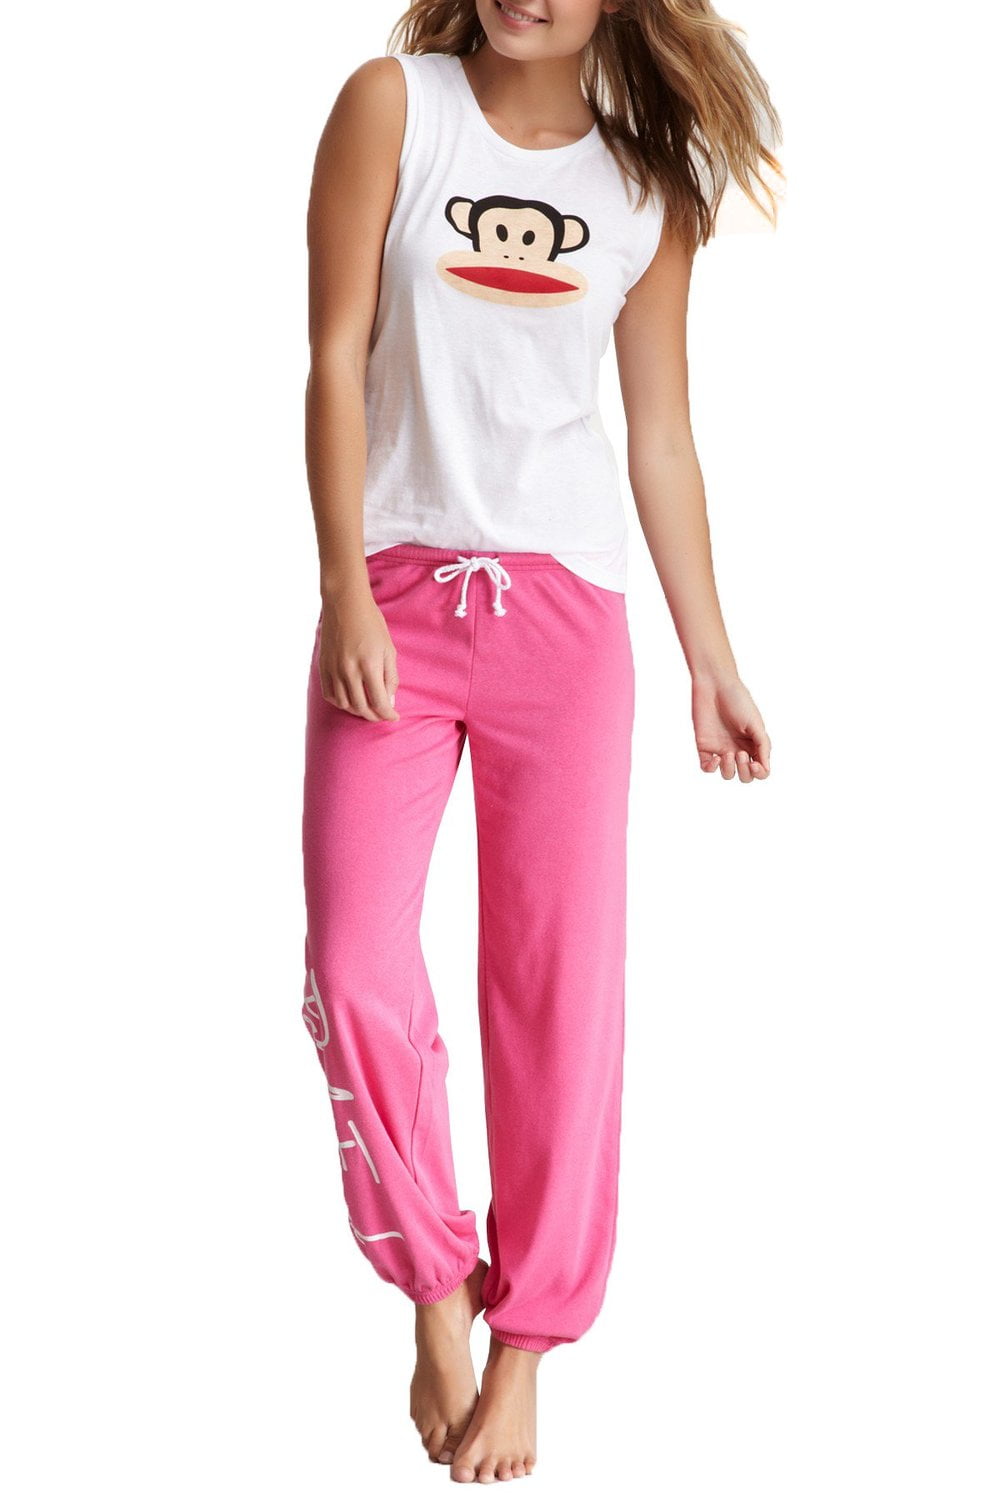 Paul Frank Julius Monkey Pink Green Gingham Shirt Pants Pajamas Toddler Girls 2T 